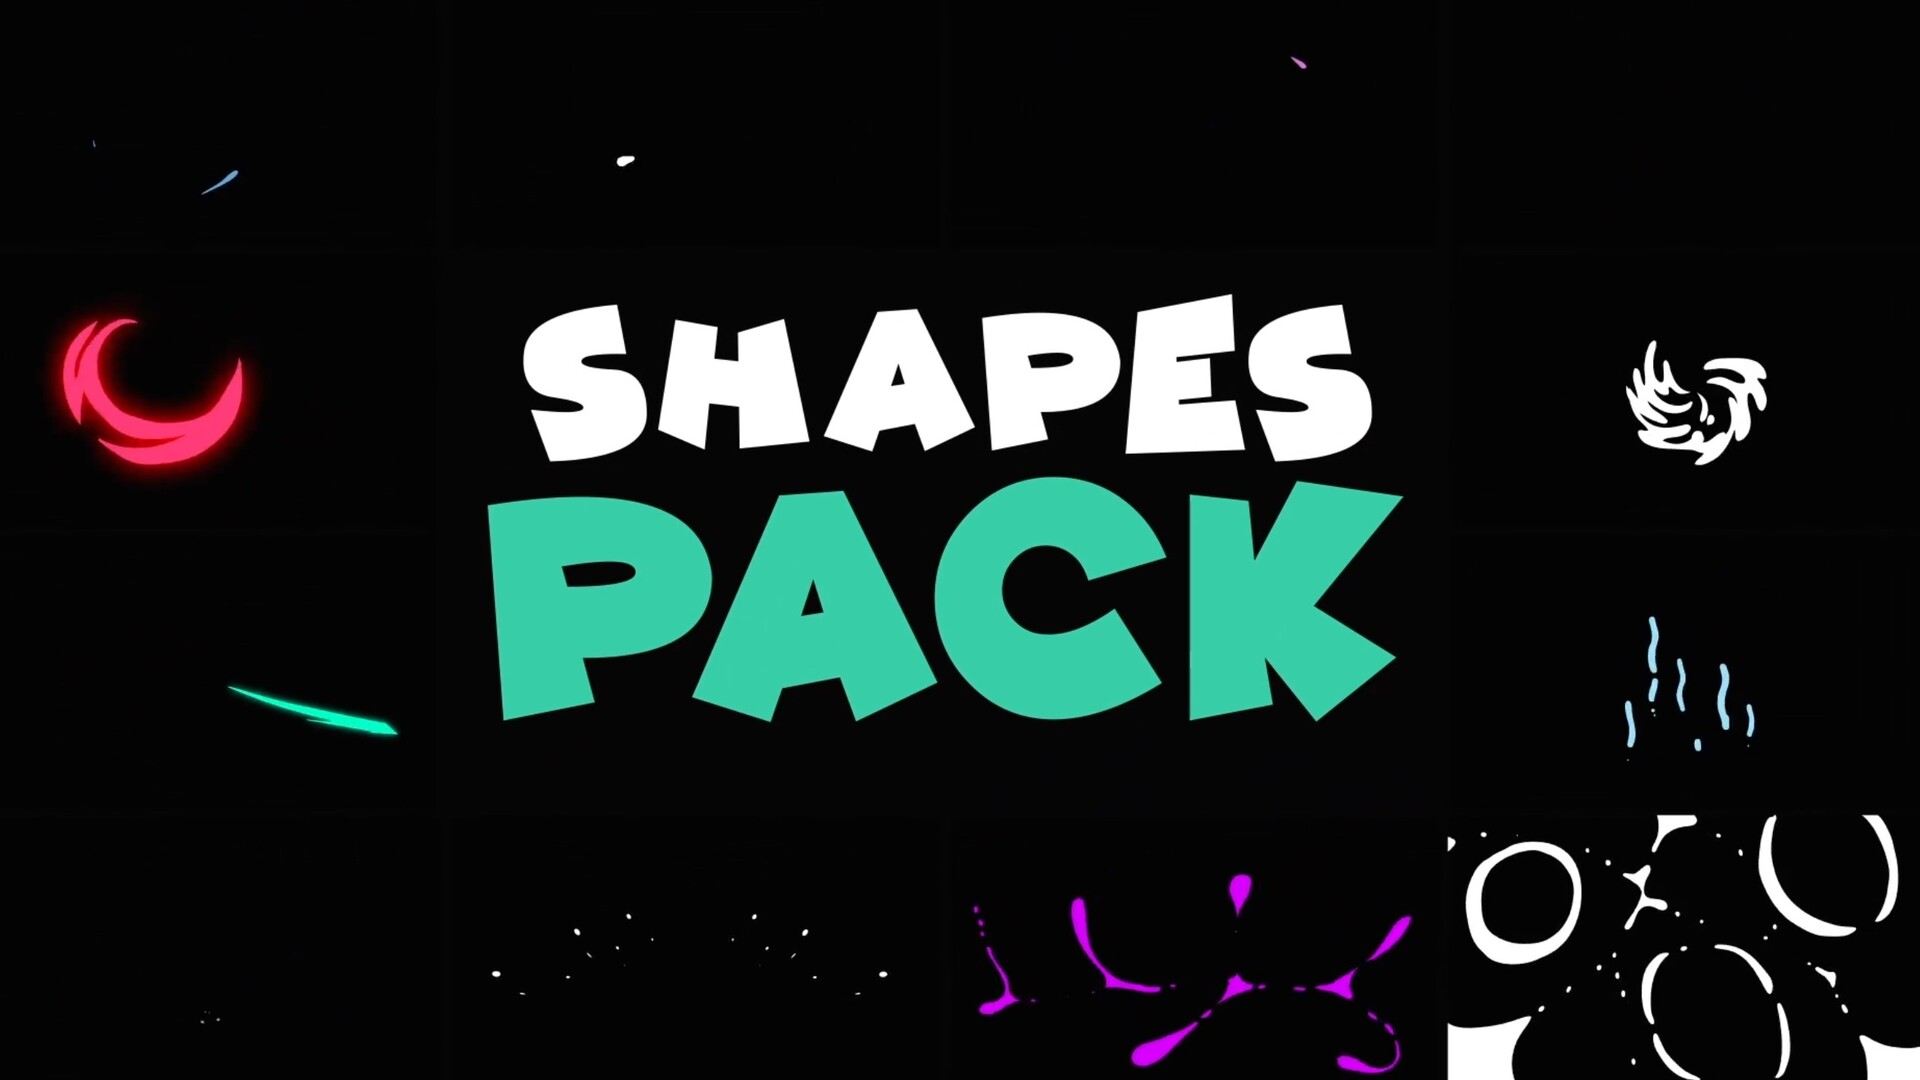 fcpx插件:彩色动画动态形状过渡模版Shapes Pack